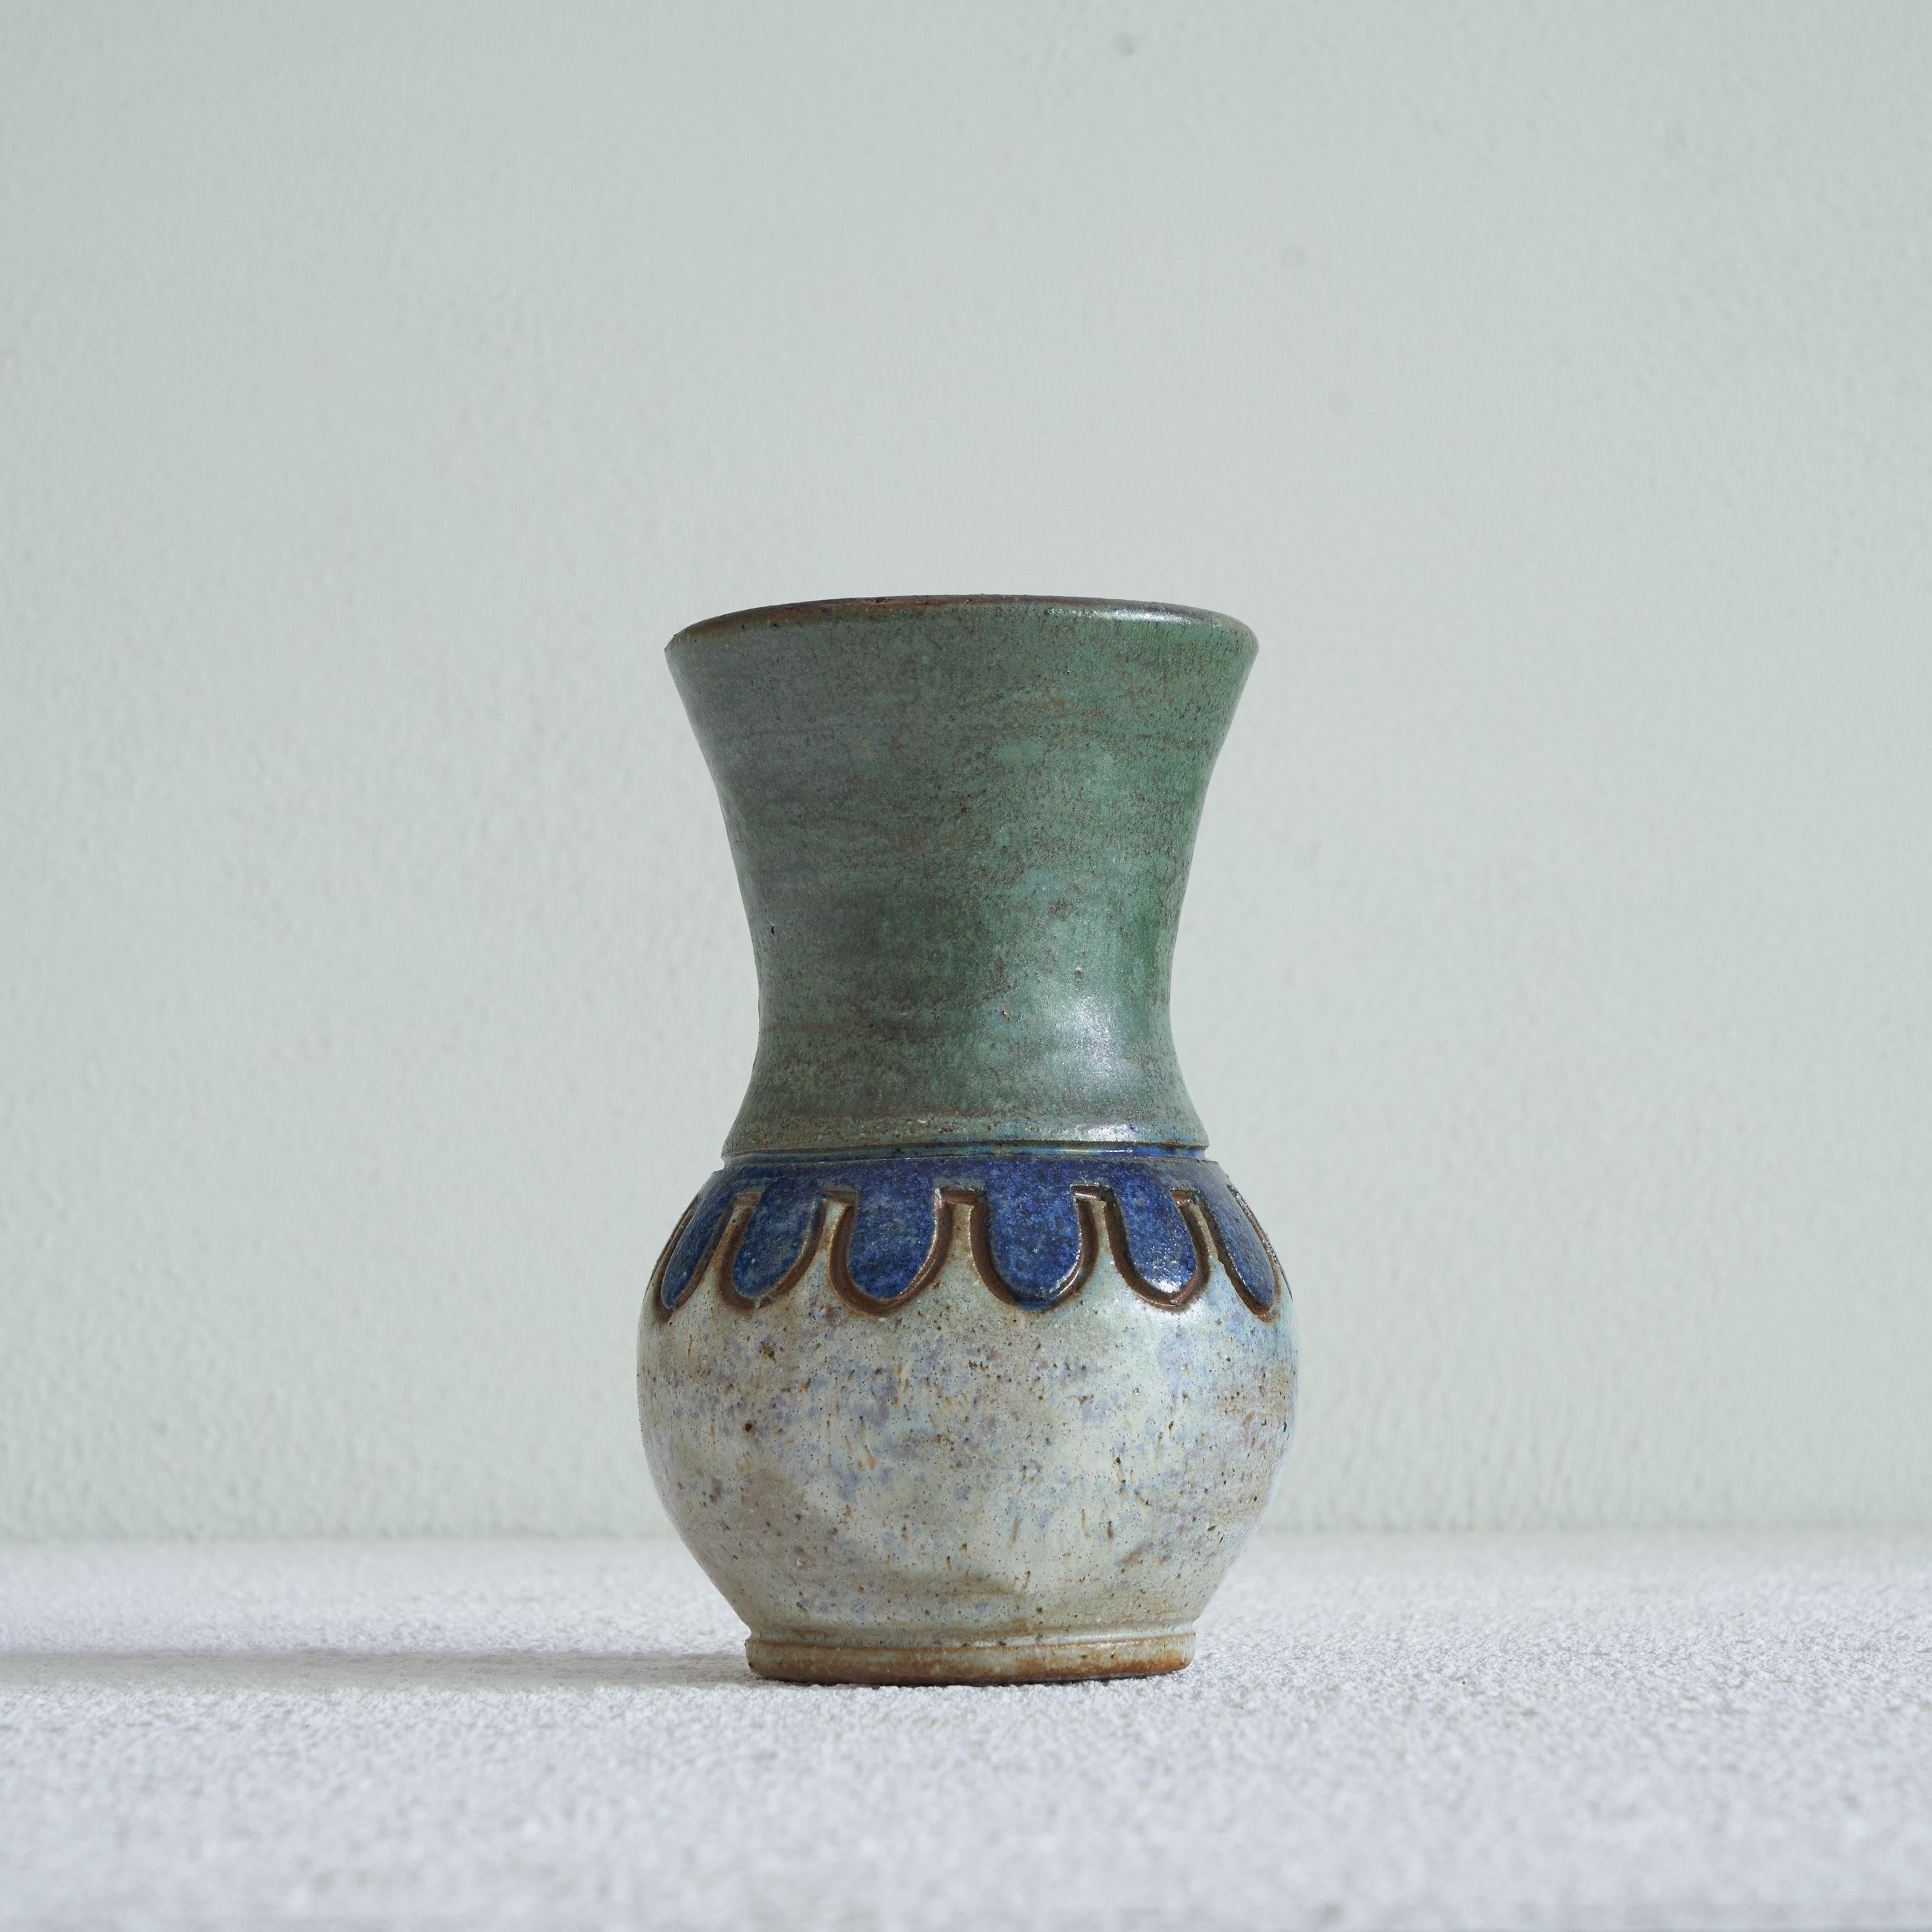 Vase de l'atelier de poterie Antoine Dubois. Mons, Belgique, milieu du XXe siècle.

Il s'agit d'une pièce exquise de poterie d'atelier belge du milieu du siècle, fabriquée par Antoine Dubois à Mons. Il y avait plusieurs ateliers de poterie de